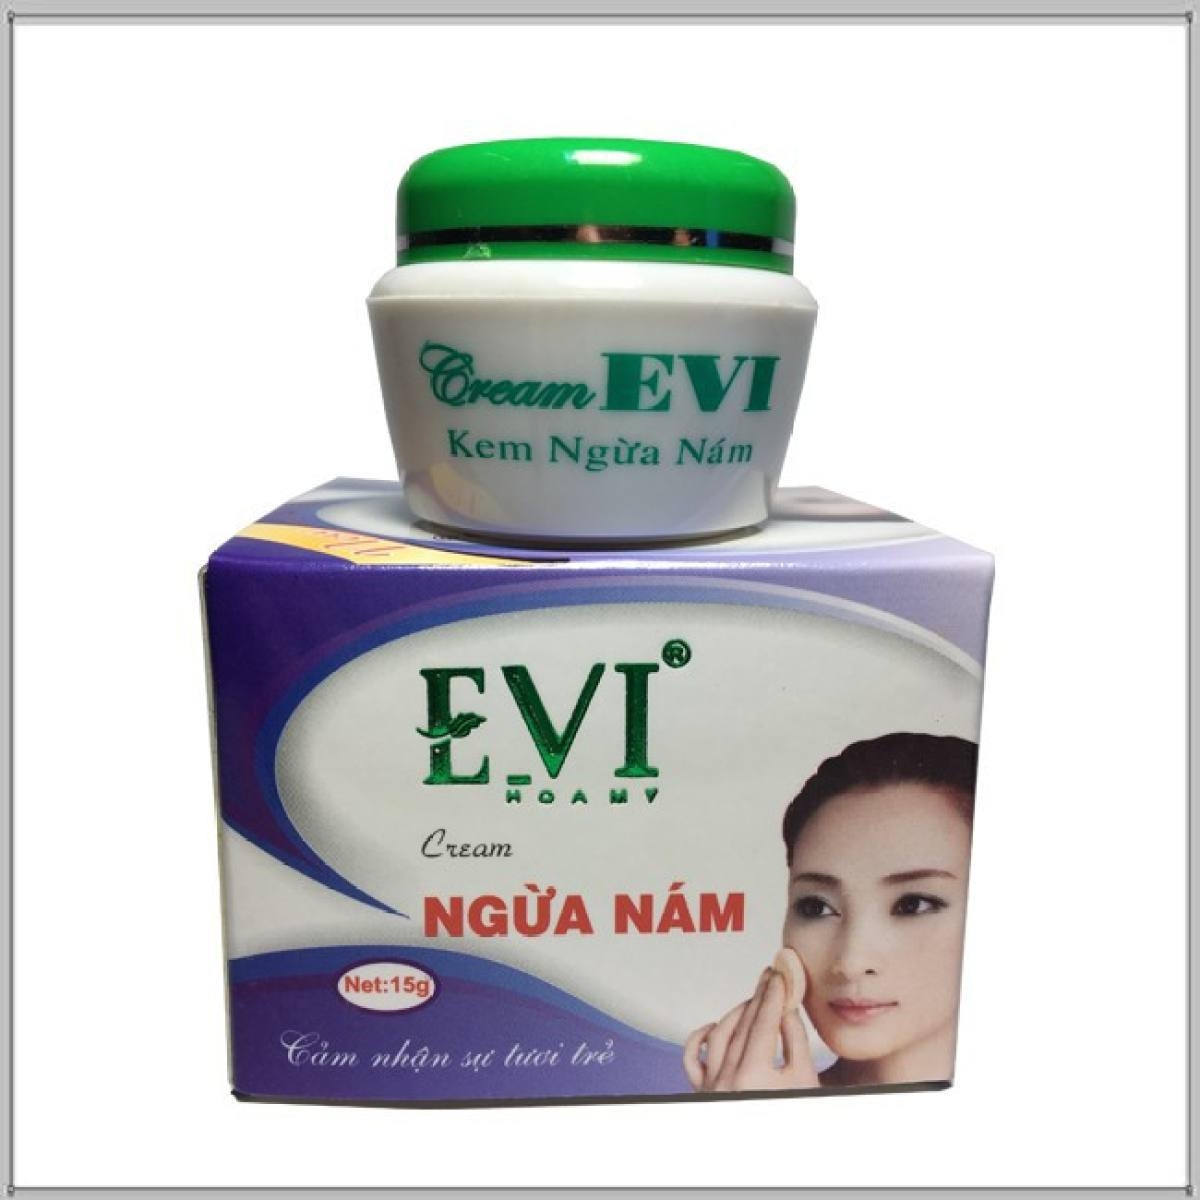 Thu hồi lô mỹ phẩm Evi Cream do kém chất lượng, đồng thời đình chỉ lưu hành